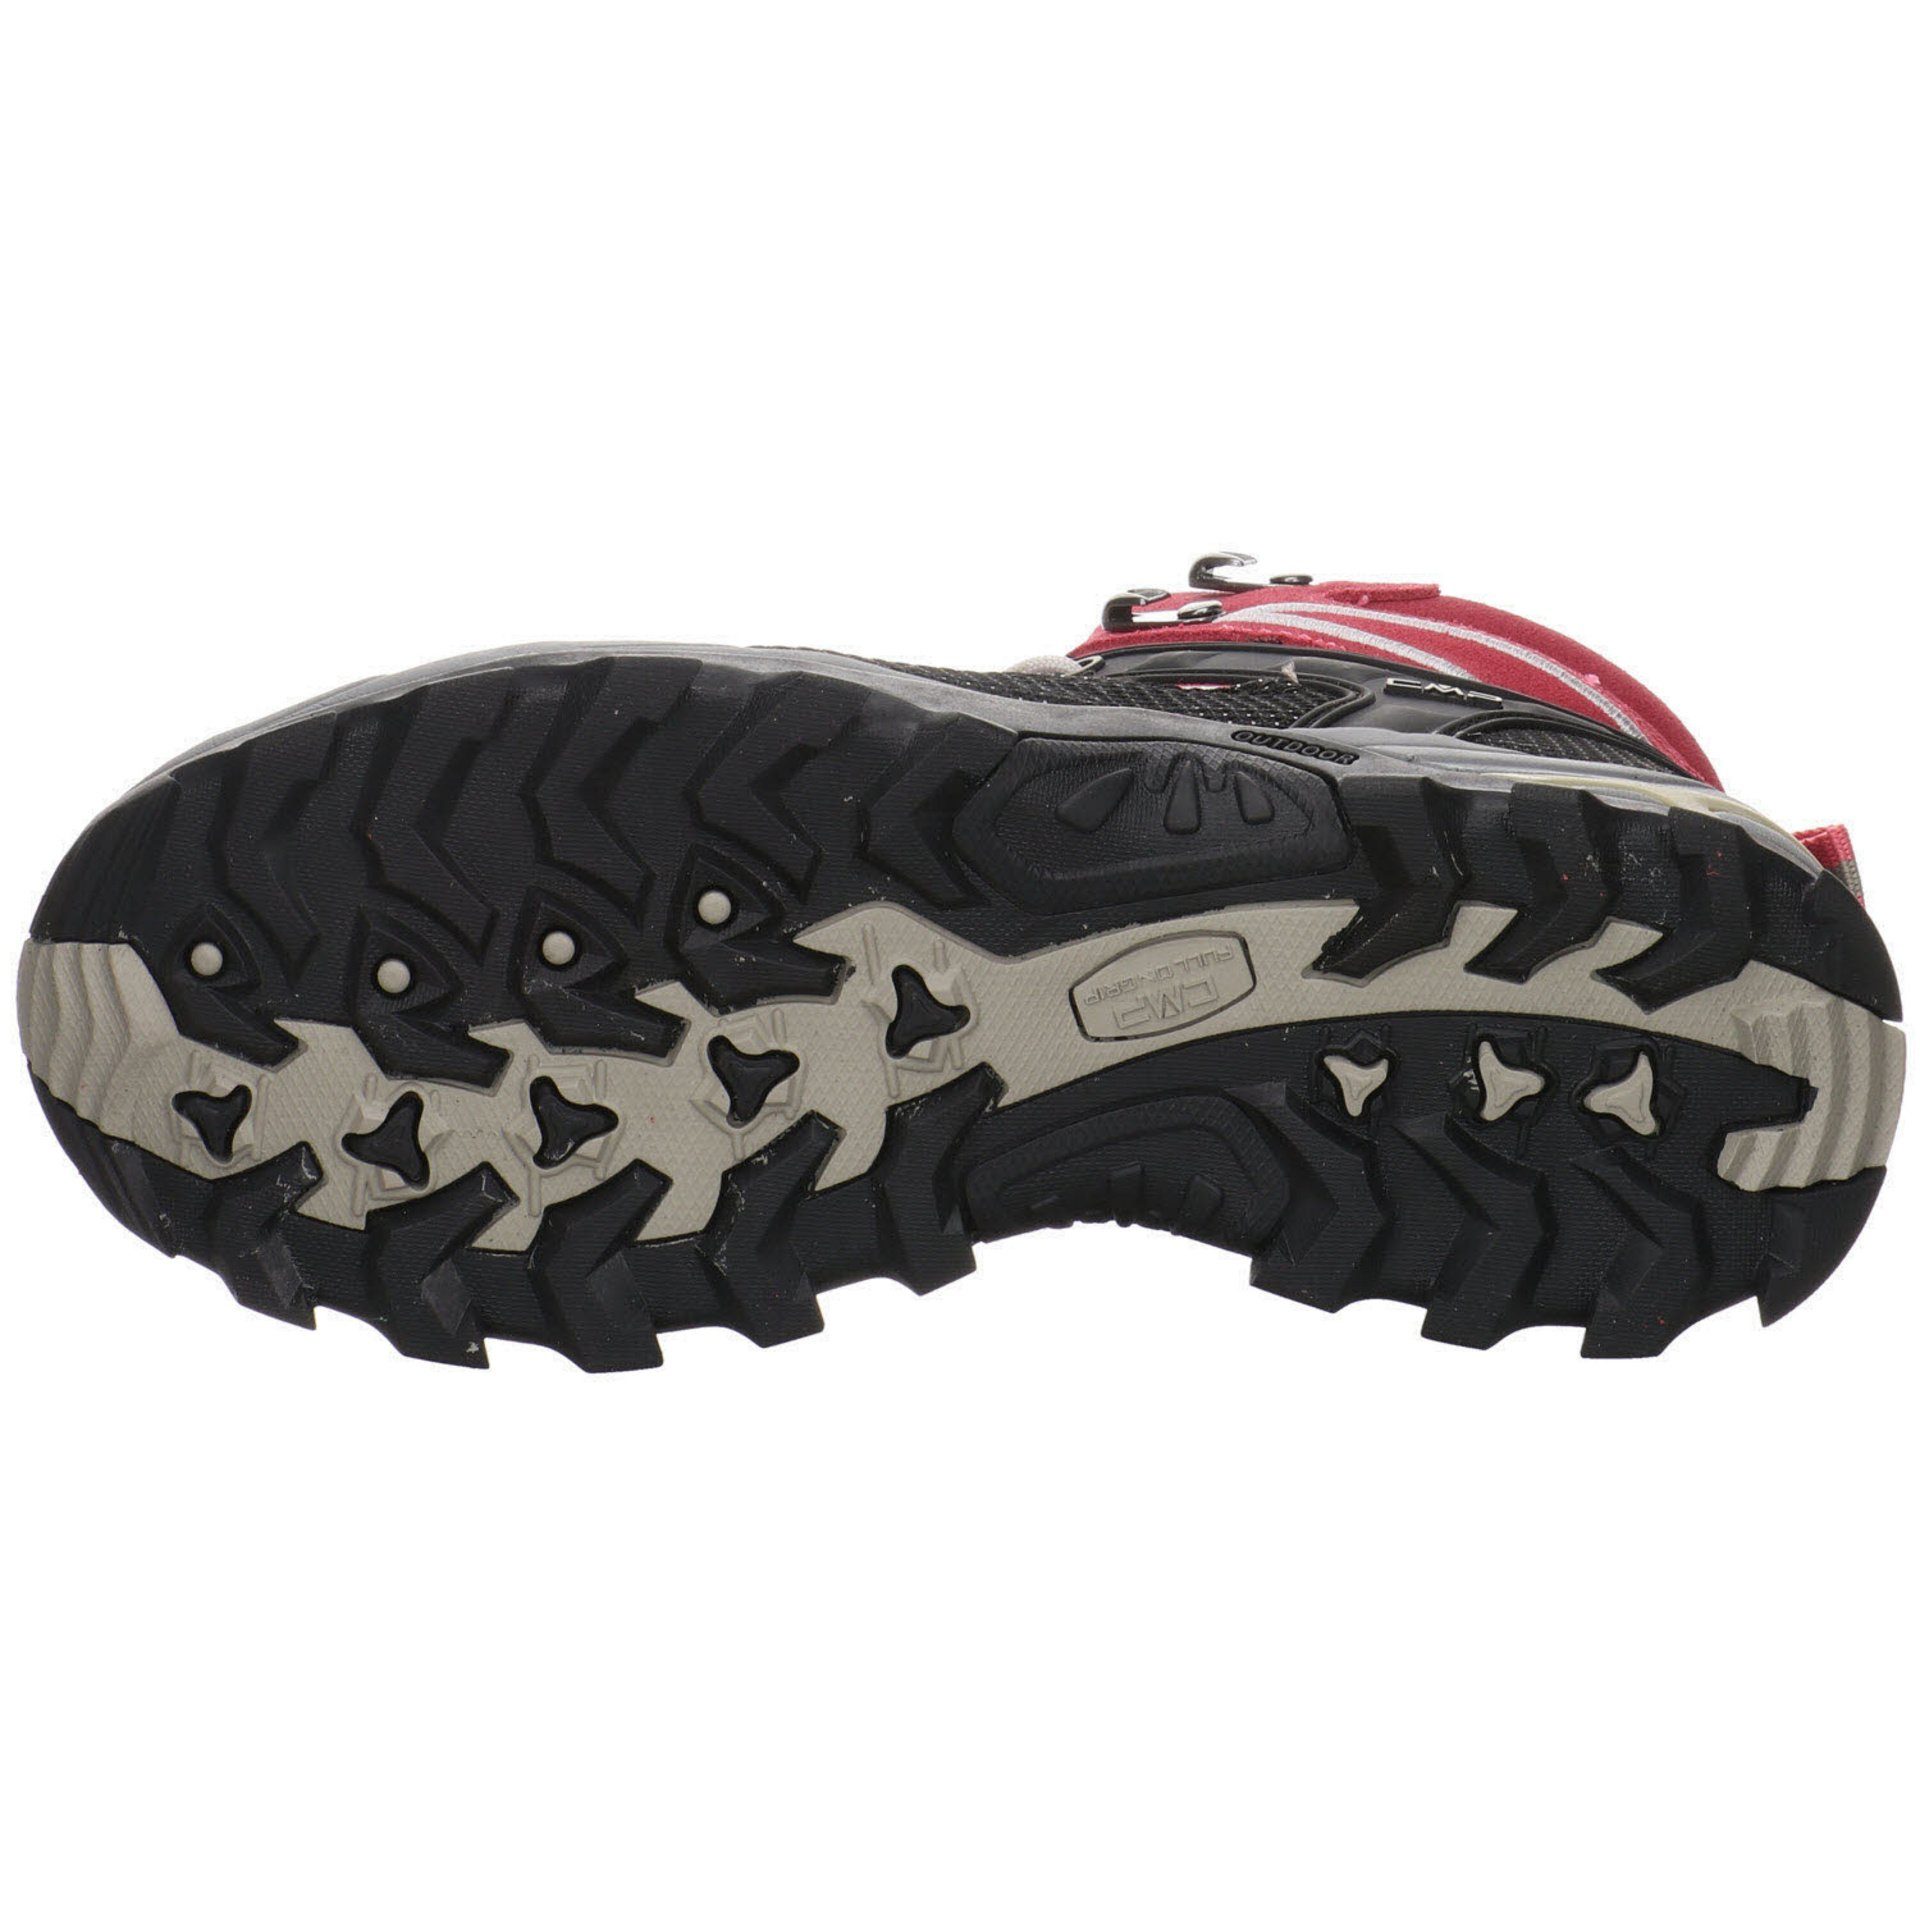 Damen CMP ROSE-SAND Leder-/Textilkombination Outdoorschuh Outdoor Rigel Outdoorschuh Mid Schuhe